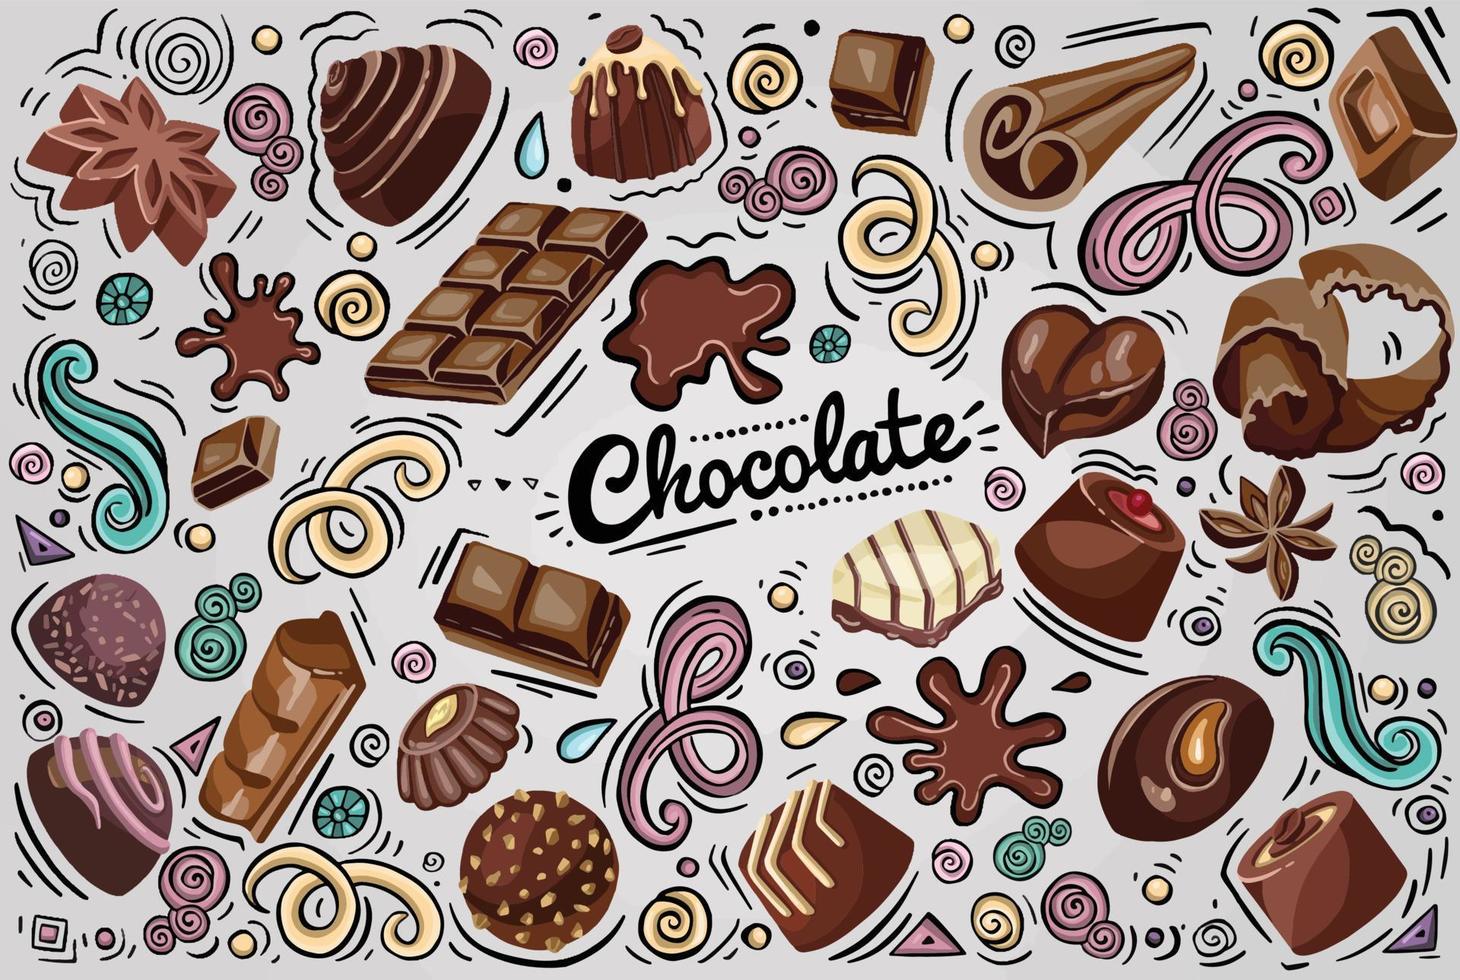 naadloos patroon met chocolaatjes, stukjes chocolade, snoepjes in gekleurde wikkels op blauwe achtergrond. illustratie van een dessert in een platte cartoon-stijl. vector